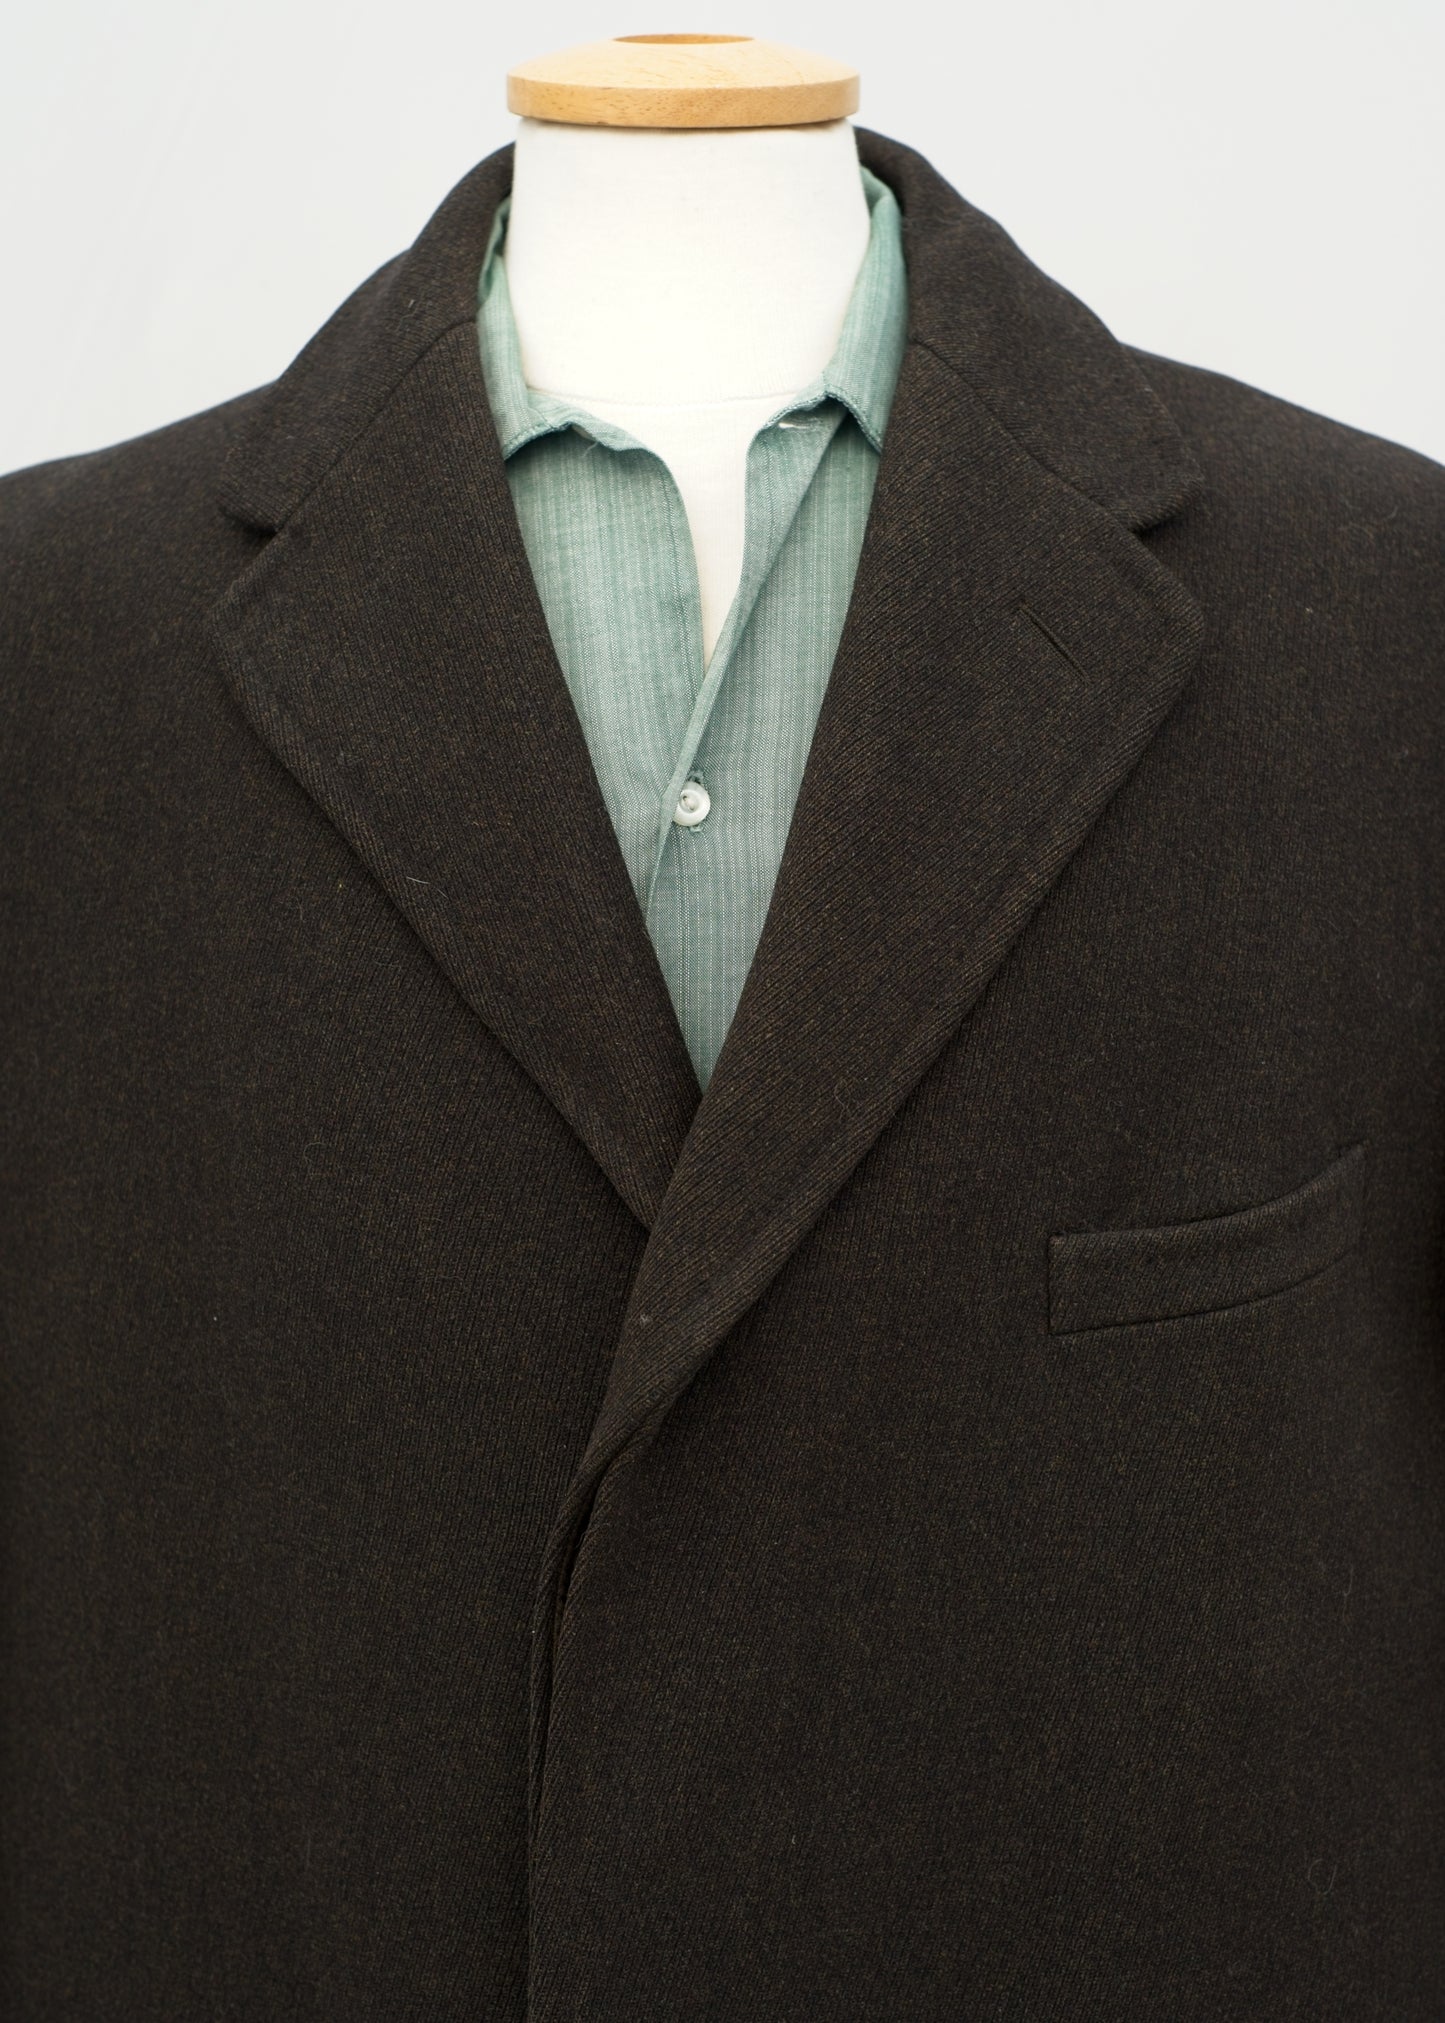 Men's Vintage 50's Wool Crombie Overcoat 40/46" Chest